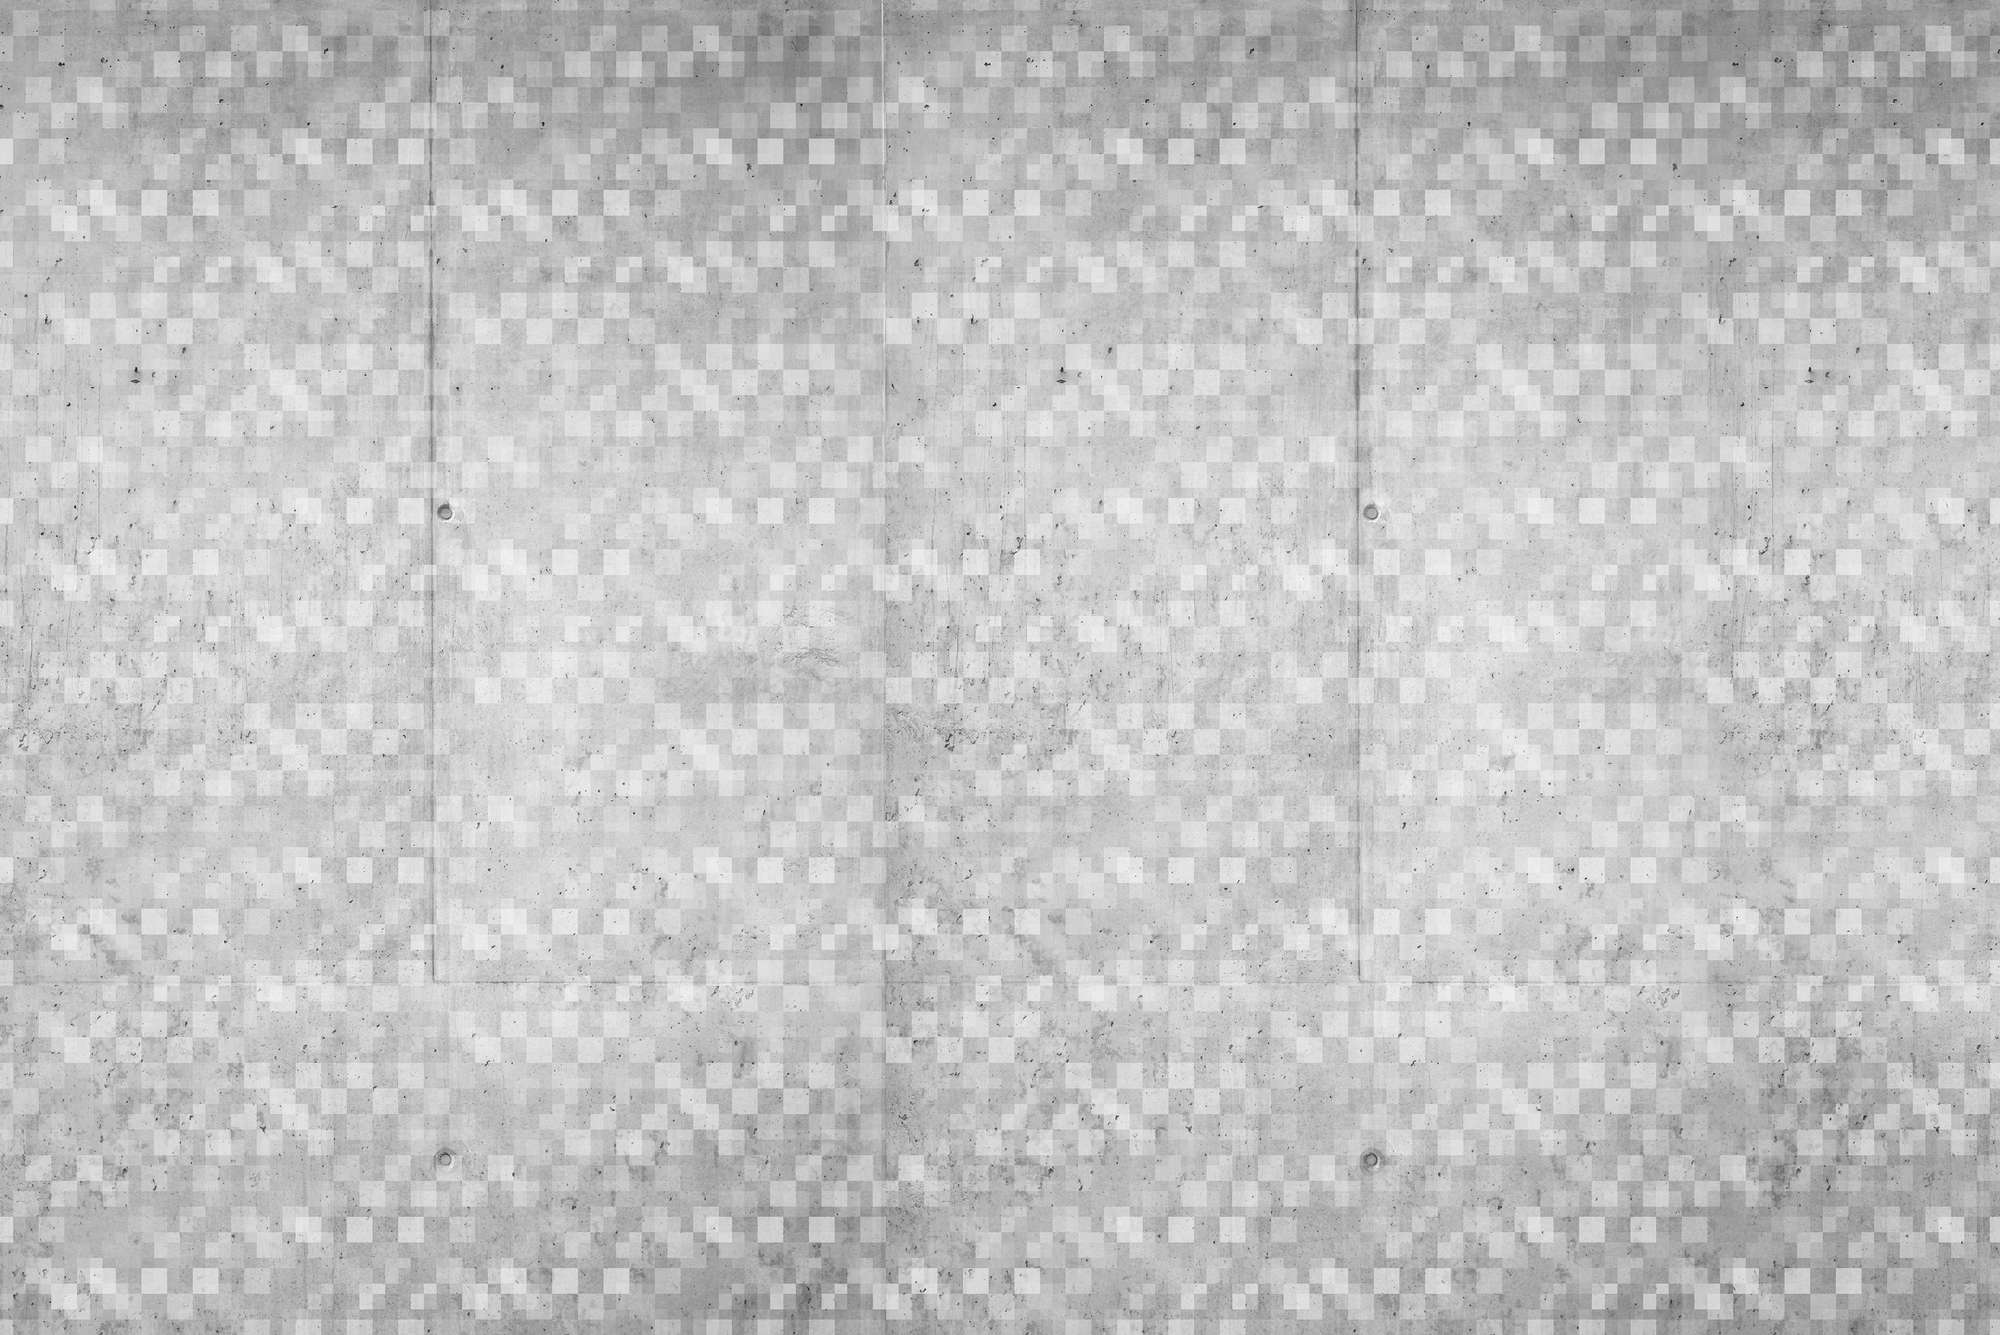             Papier peint graphique avec motif de cube chevauchant gris sur intissé structuré
        